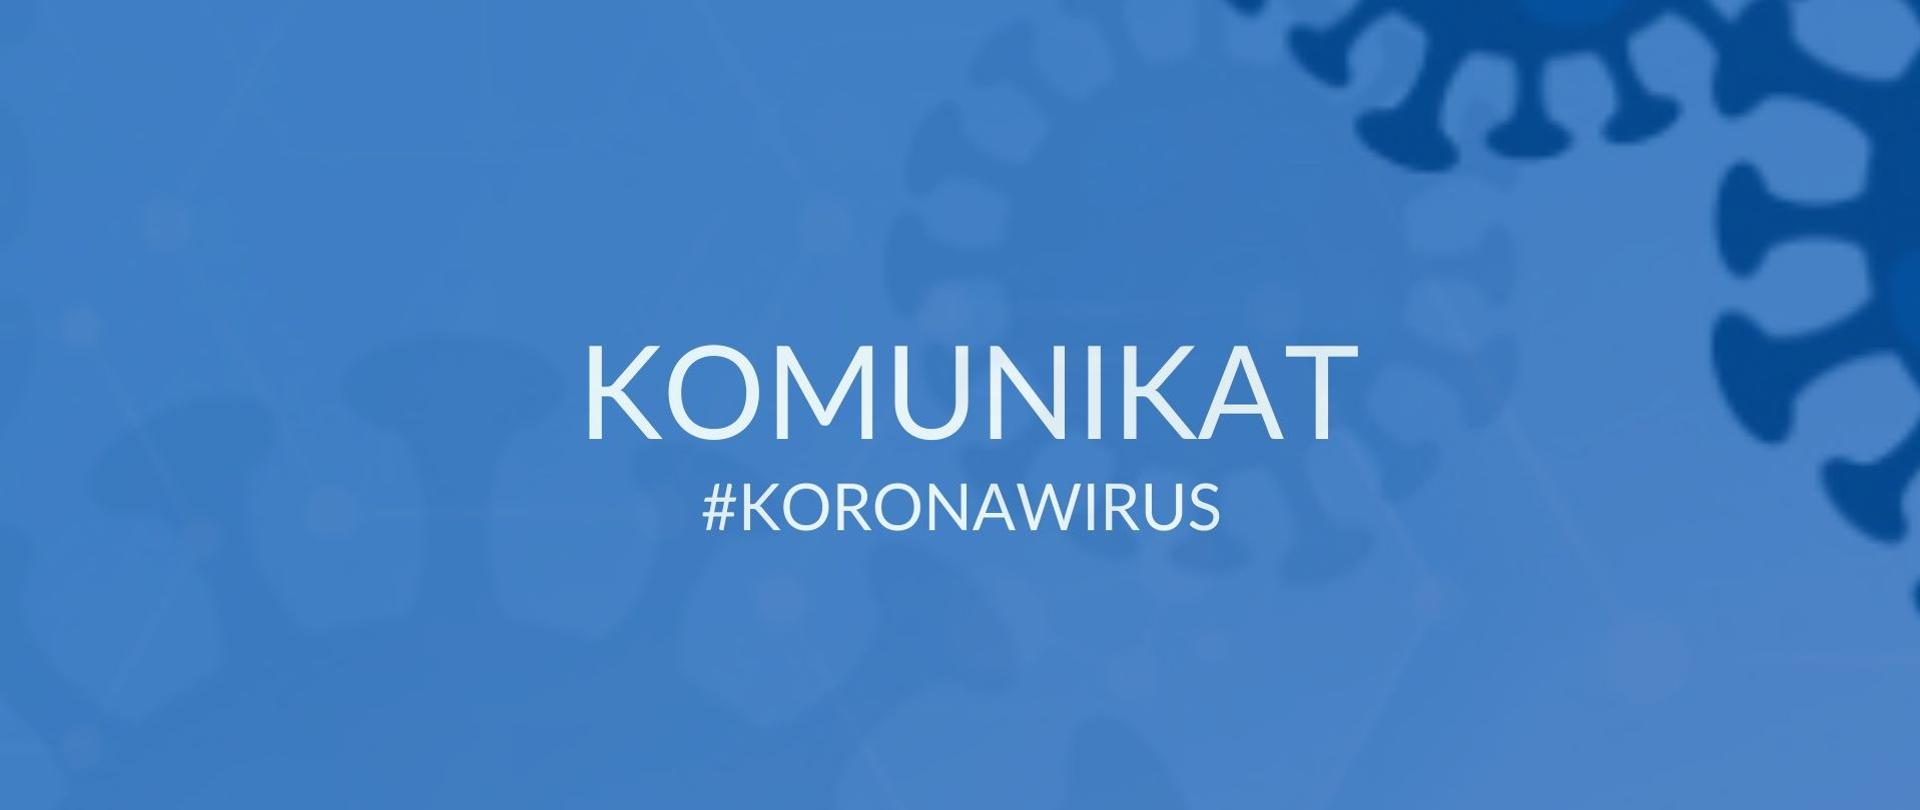 koronawirus_7